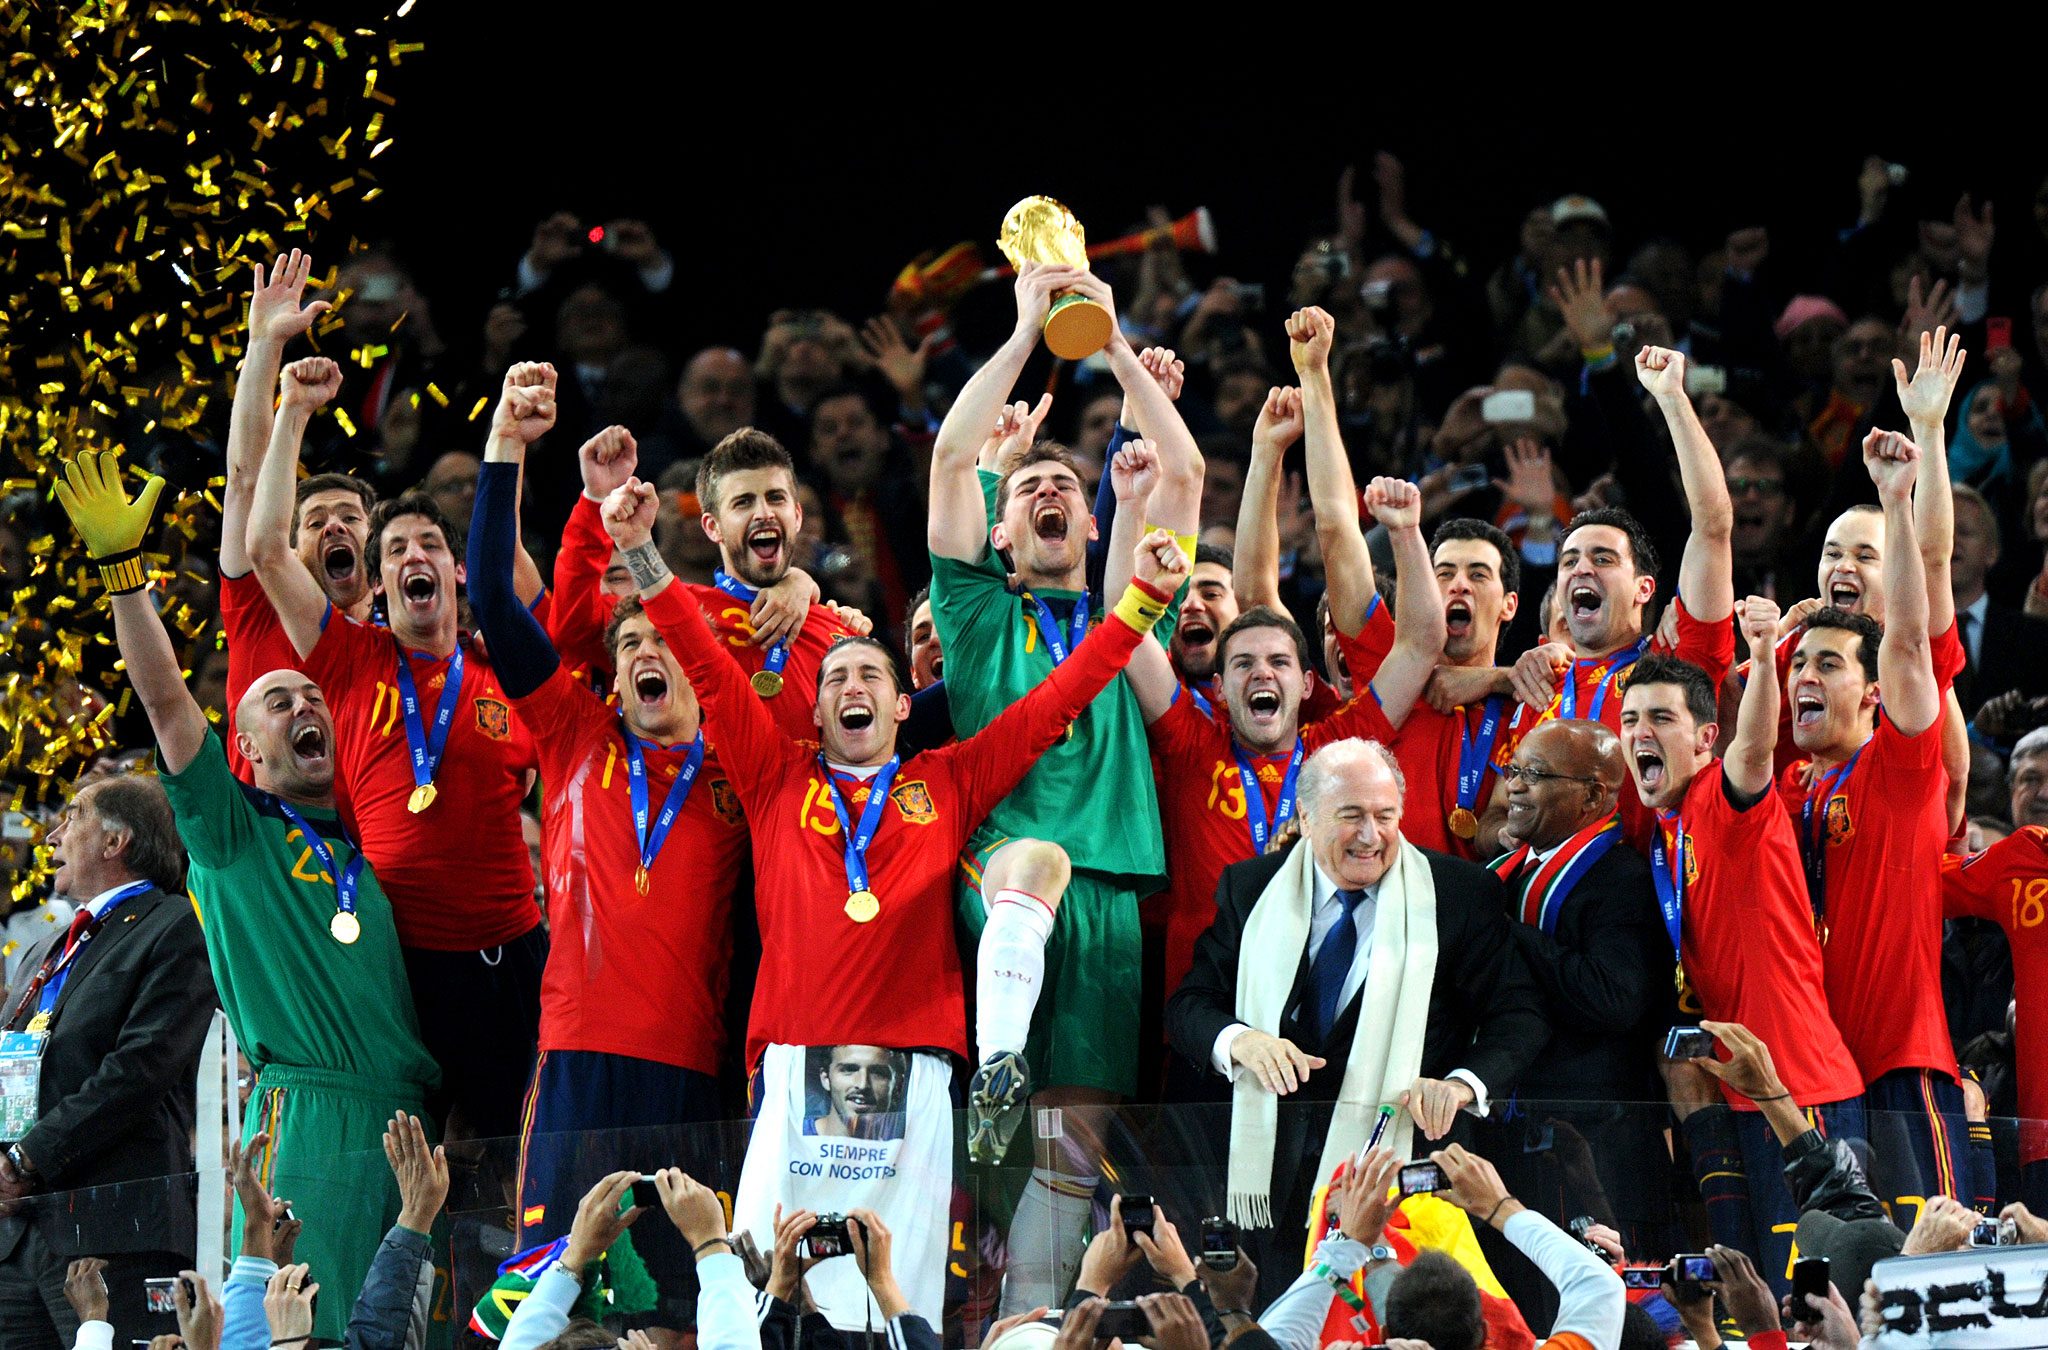 Spain 2010 - World Cup Winners - ESPN
